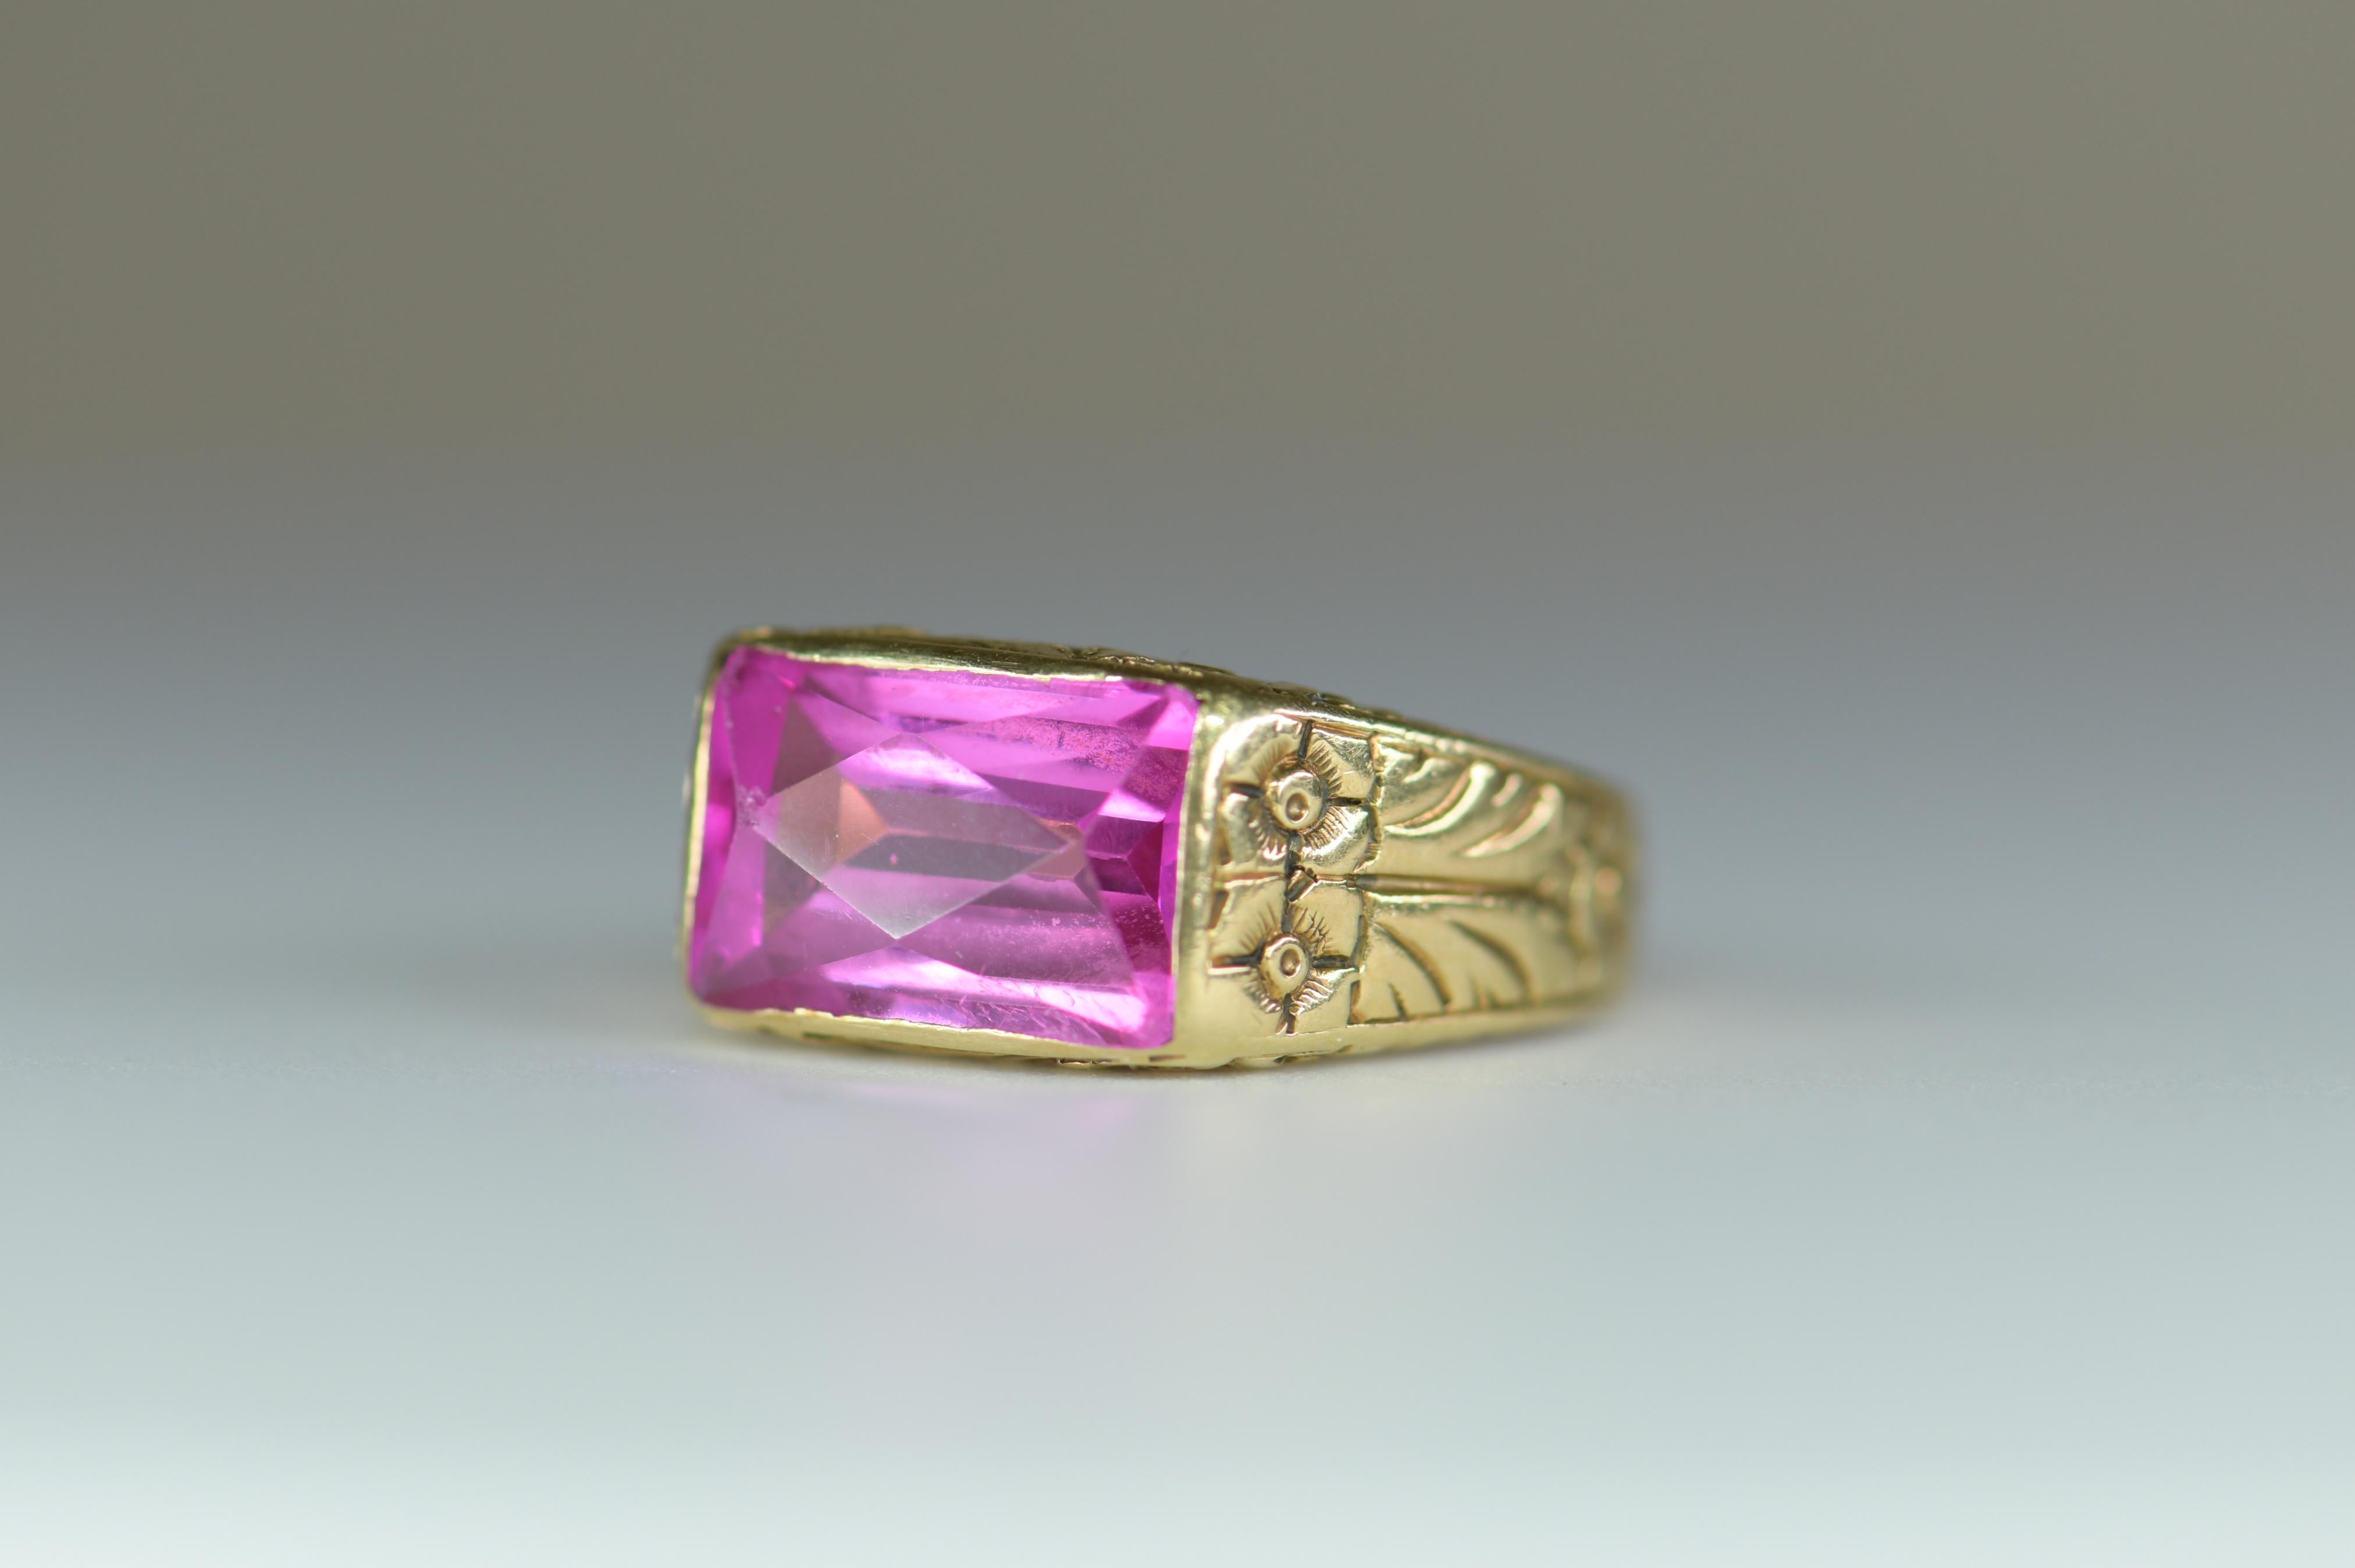 Antiker Ring mit eingraviertem Blumendesign und einem leuchtenden 12 mm x 7 mm großen rosa Quarz. Ein leuchtend tealrosa Smaragdquarz im Smaragdschliff ist wunderschön in graviertem Gold präsentiert.  Auf dem Gelbgoldband ist ein florales Muster um